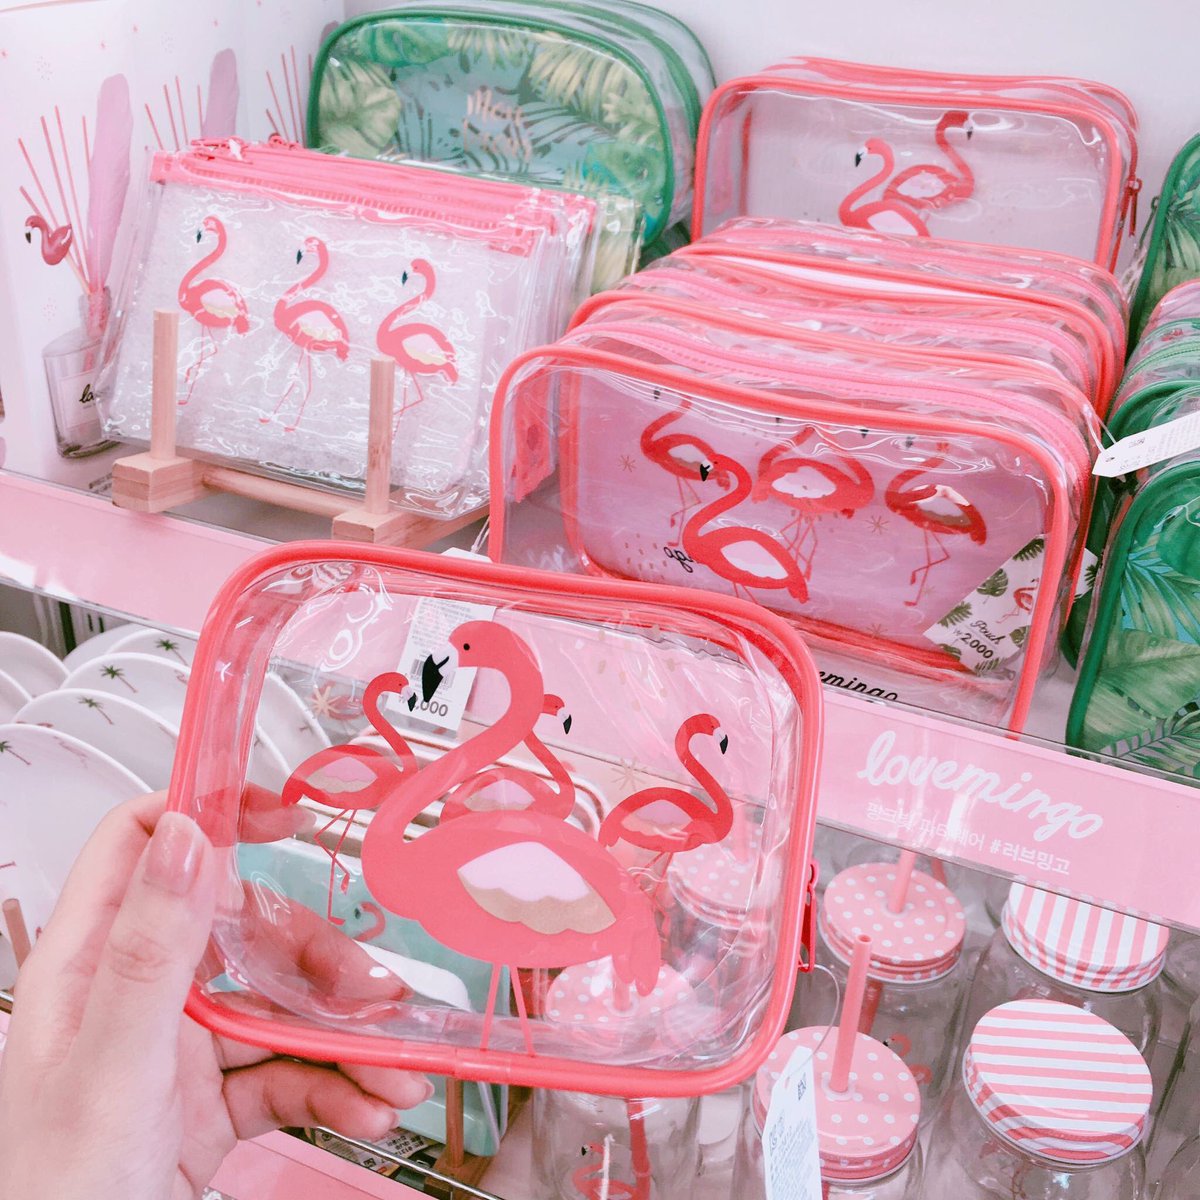 Eno 韓国ダイソー 韓国のダイソーでフラミンゴシリーズが今日から発売 ピンクのビニールポーチ とピンクのタッセルの組み合わせが最高に可愛い 韓国に行ったら絶対ゲットしたい Facebook うりれむ 우리설렘